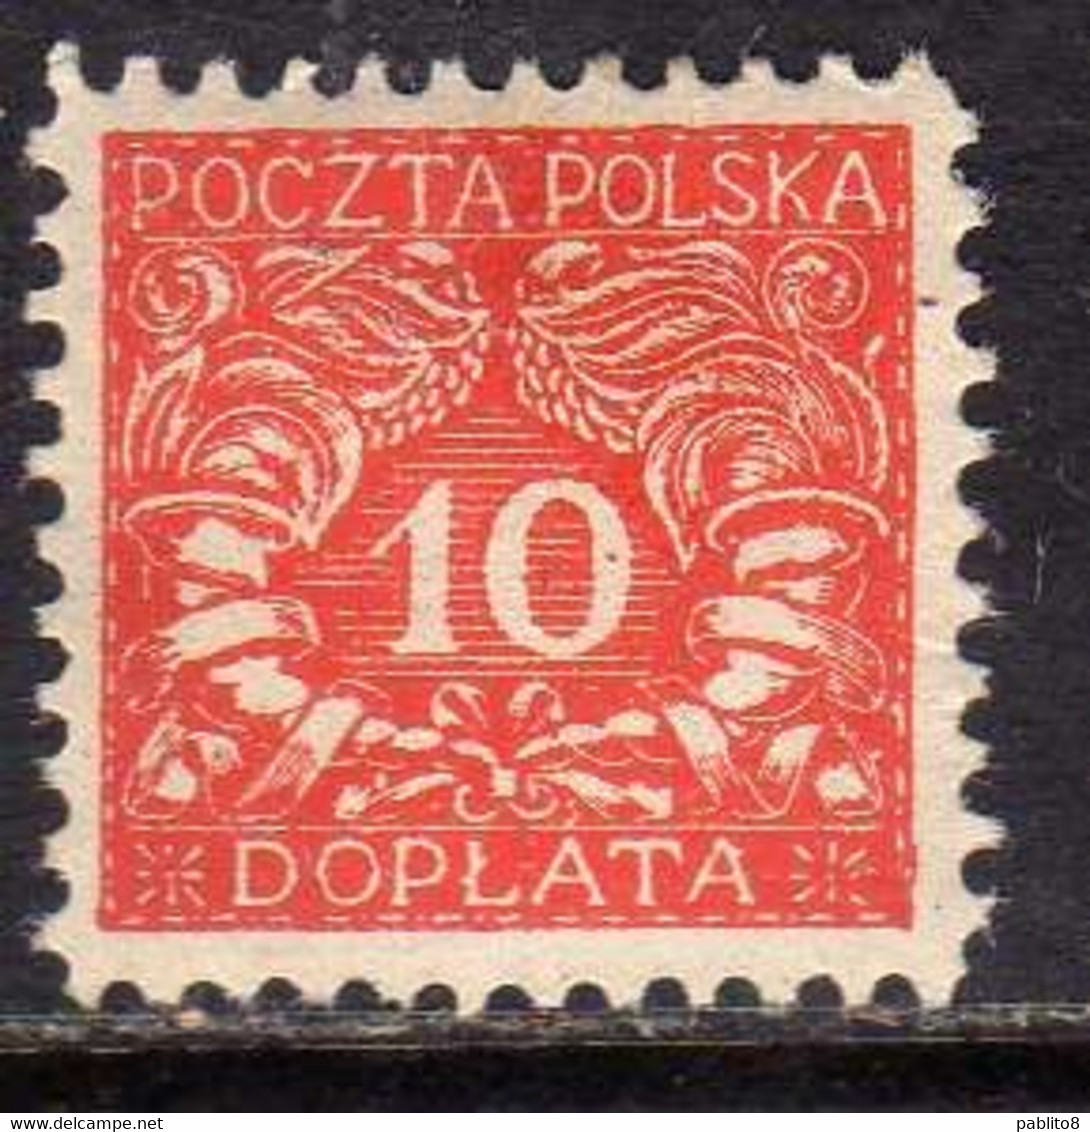 POLONIA POLAND POLSKA 1919 POSTAGE DUE STAMPS SEGNATASSE TASSE TAXE 10f MH - Postage Due